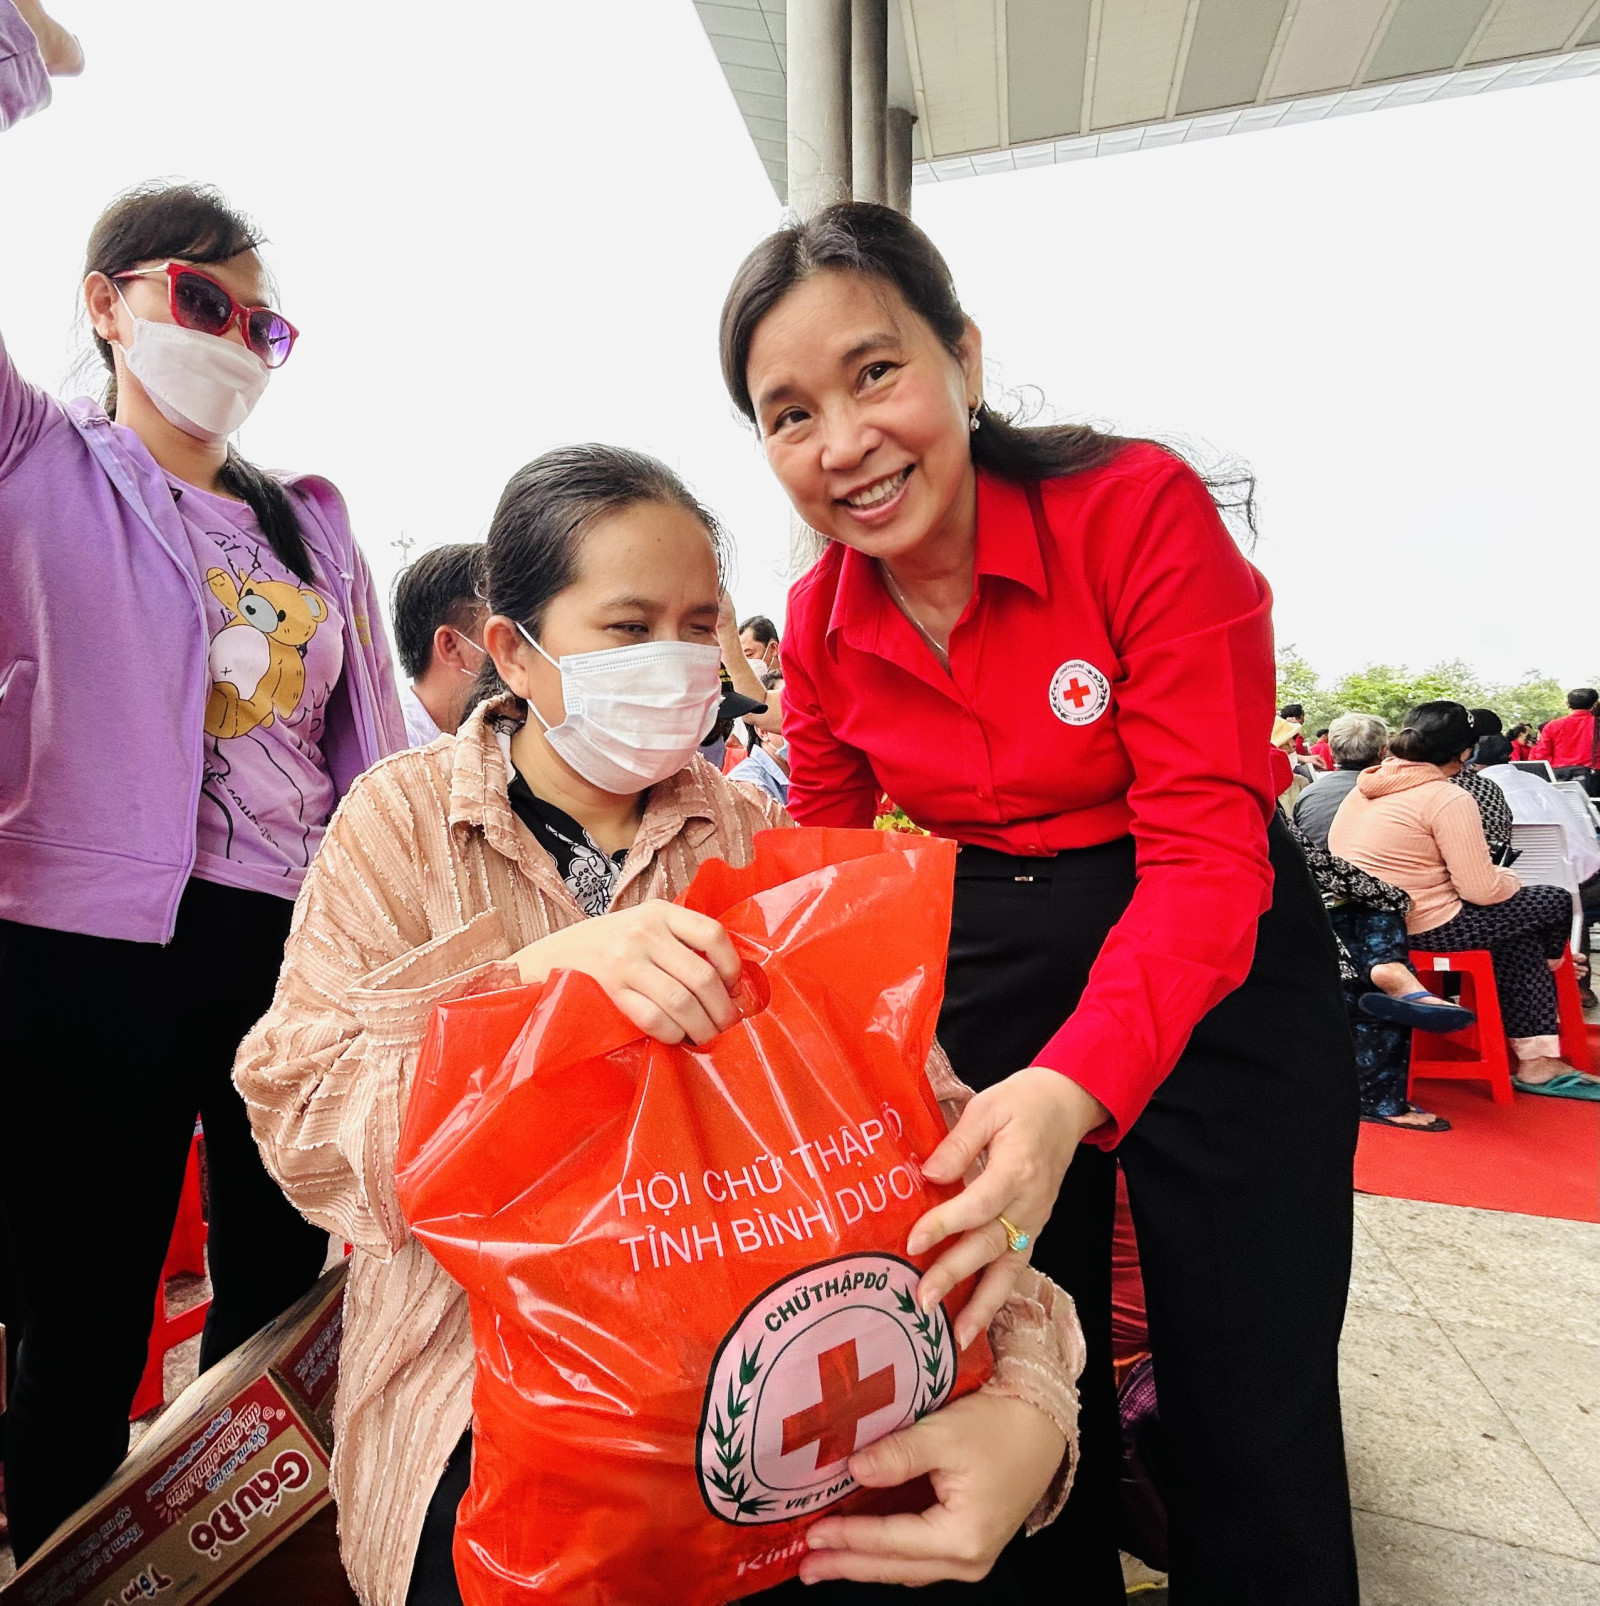 Đồng chí Huỳnh Thị Xuân Lam, Phó Chủ tịch Hội CTĐ Việt Nam tặng quà cho người khiếm thị được hỗ trợ đi “Chợ 0 đồng”.